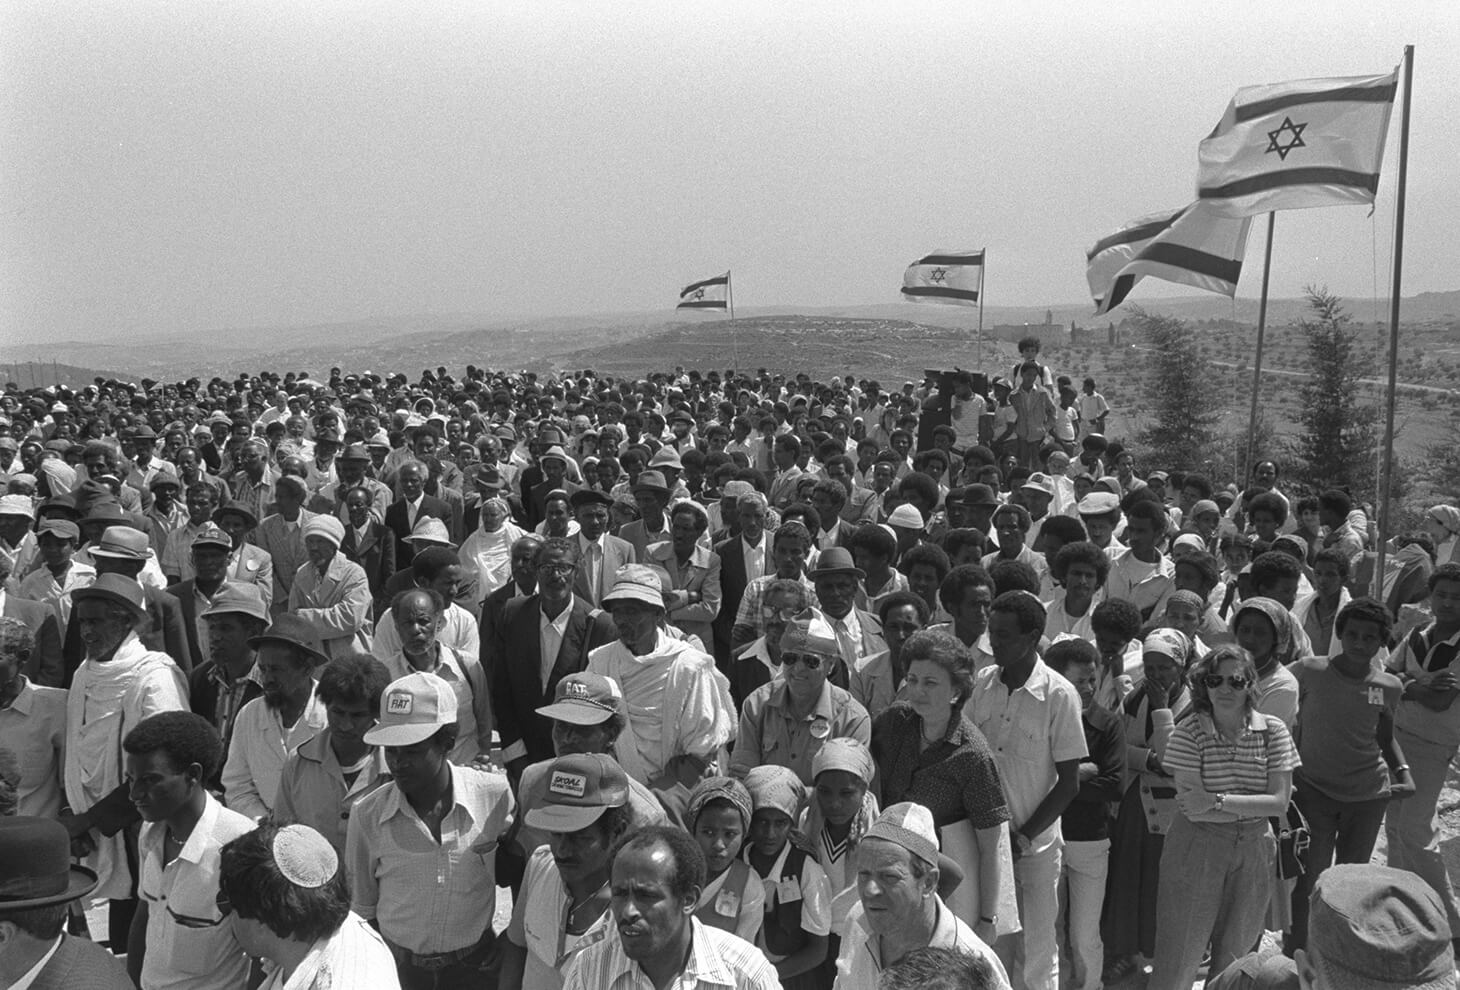 חברי קהילת עולי אתיופיה בטקס נטיעת עצים ליד רמת רחל, לזכרם של יהודי אתיופיה שנפלו בדרכם לישראל. צילום: נתי הרניק לע